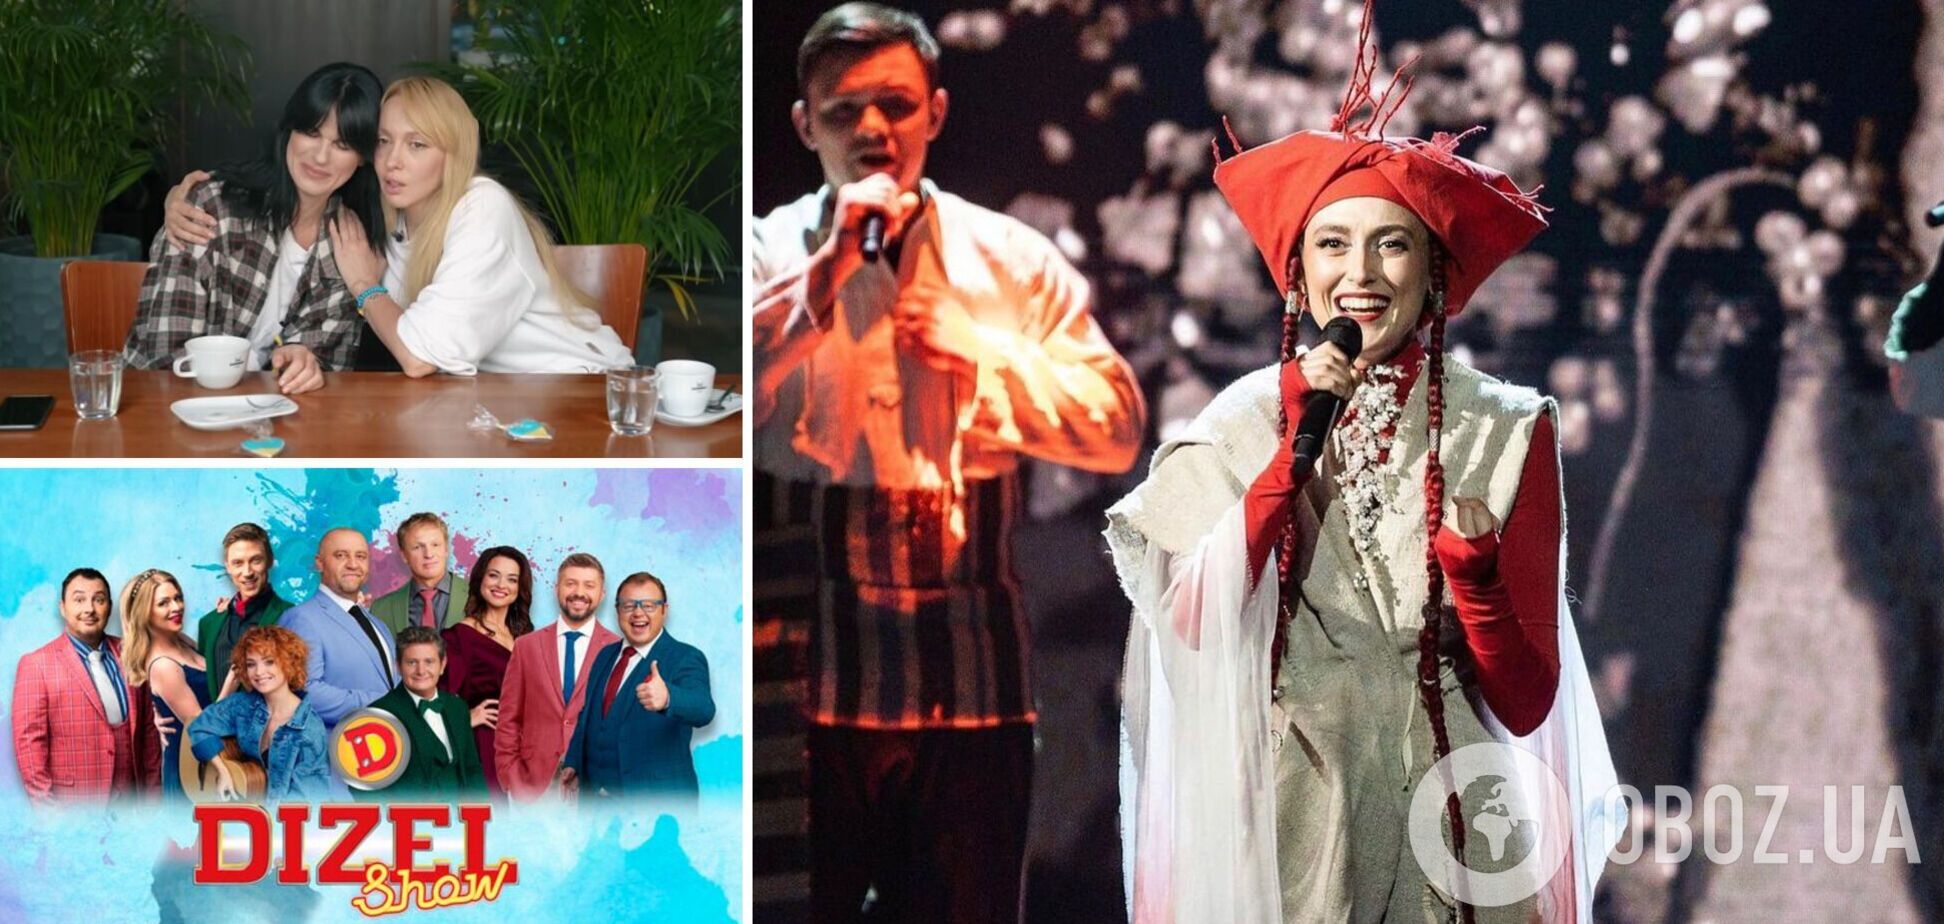 Евровидение, язык и сексизм: из-за чего скандалил украинский шоу-биз в 2022 году